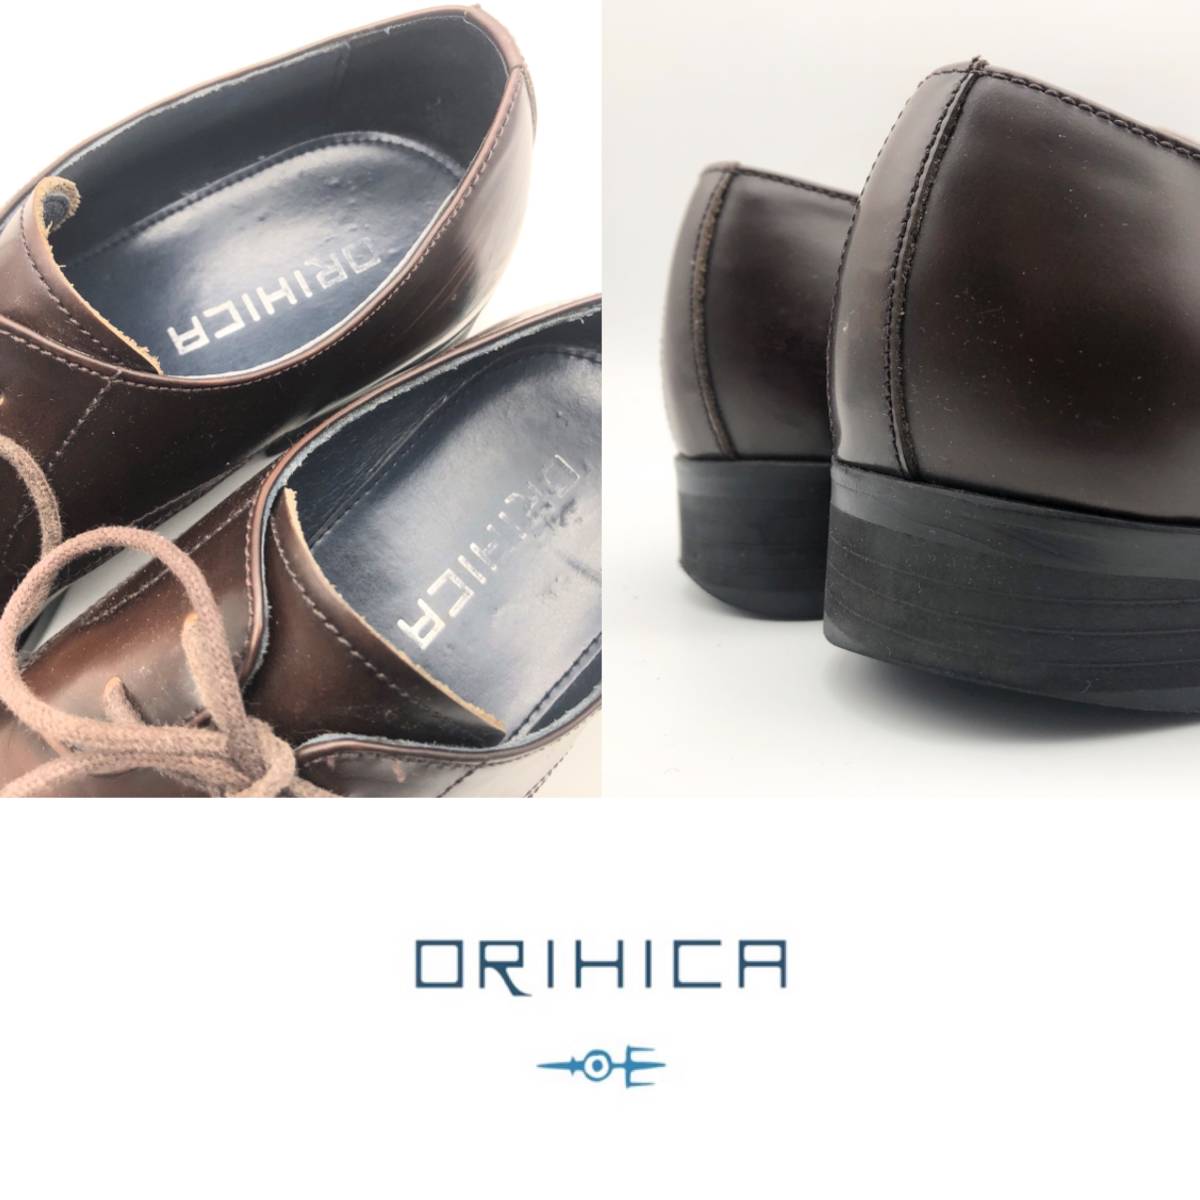 ORIHICA オリヒカ レースシューズ ダークブラウン 革靴 42 メンズ USED_画像6